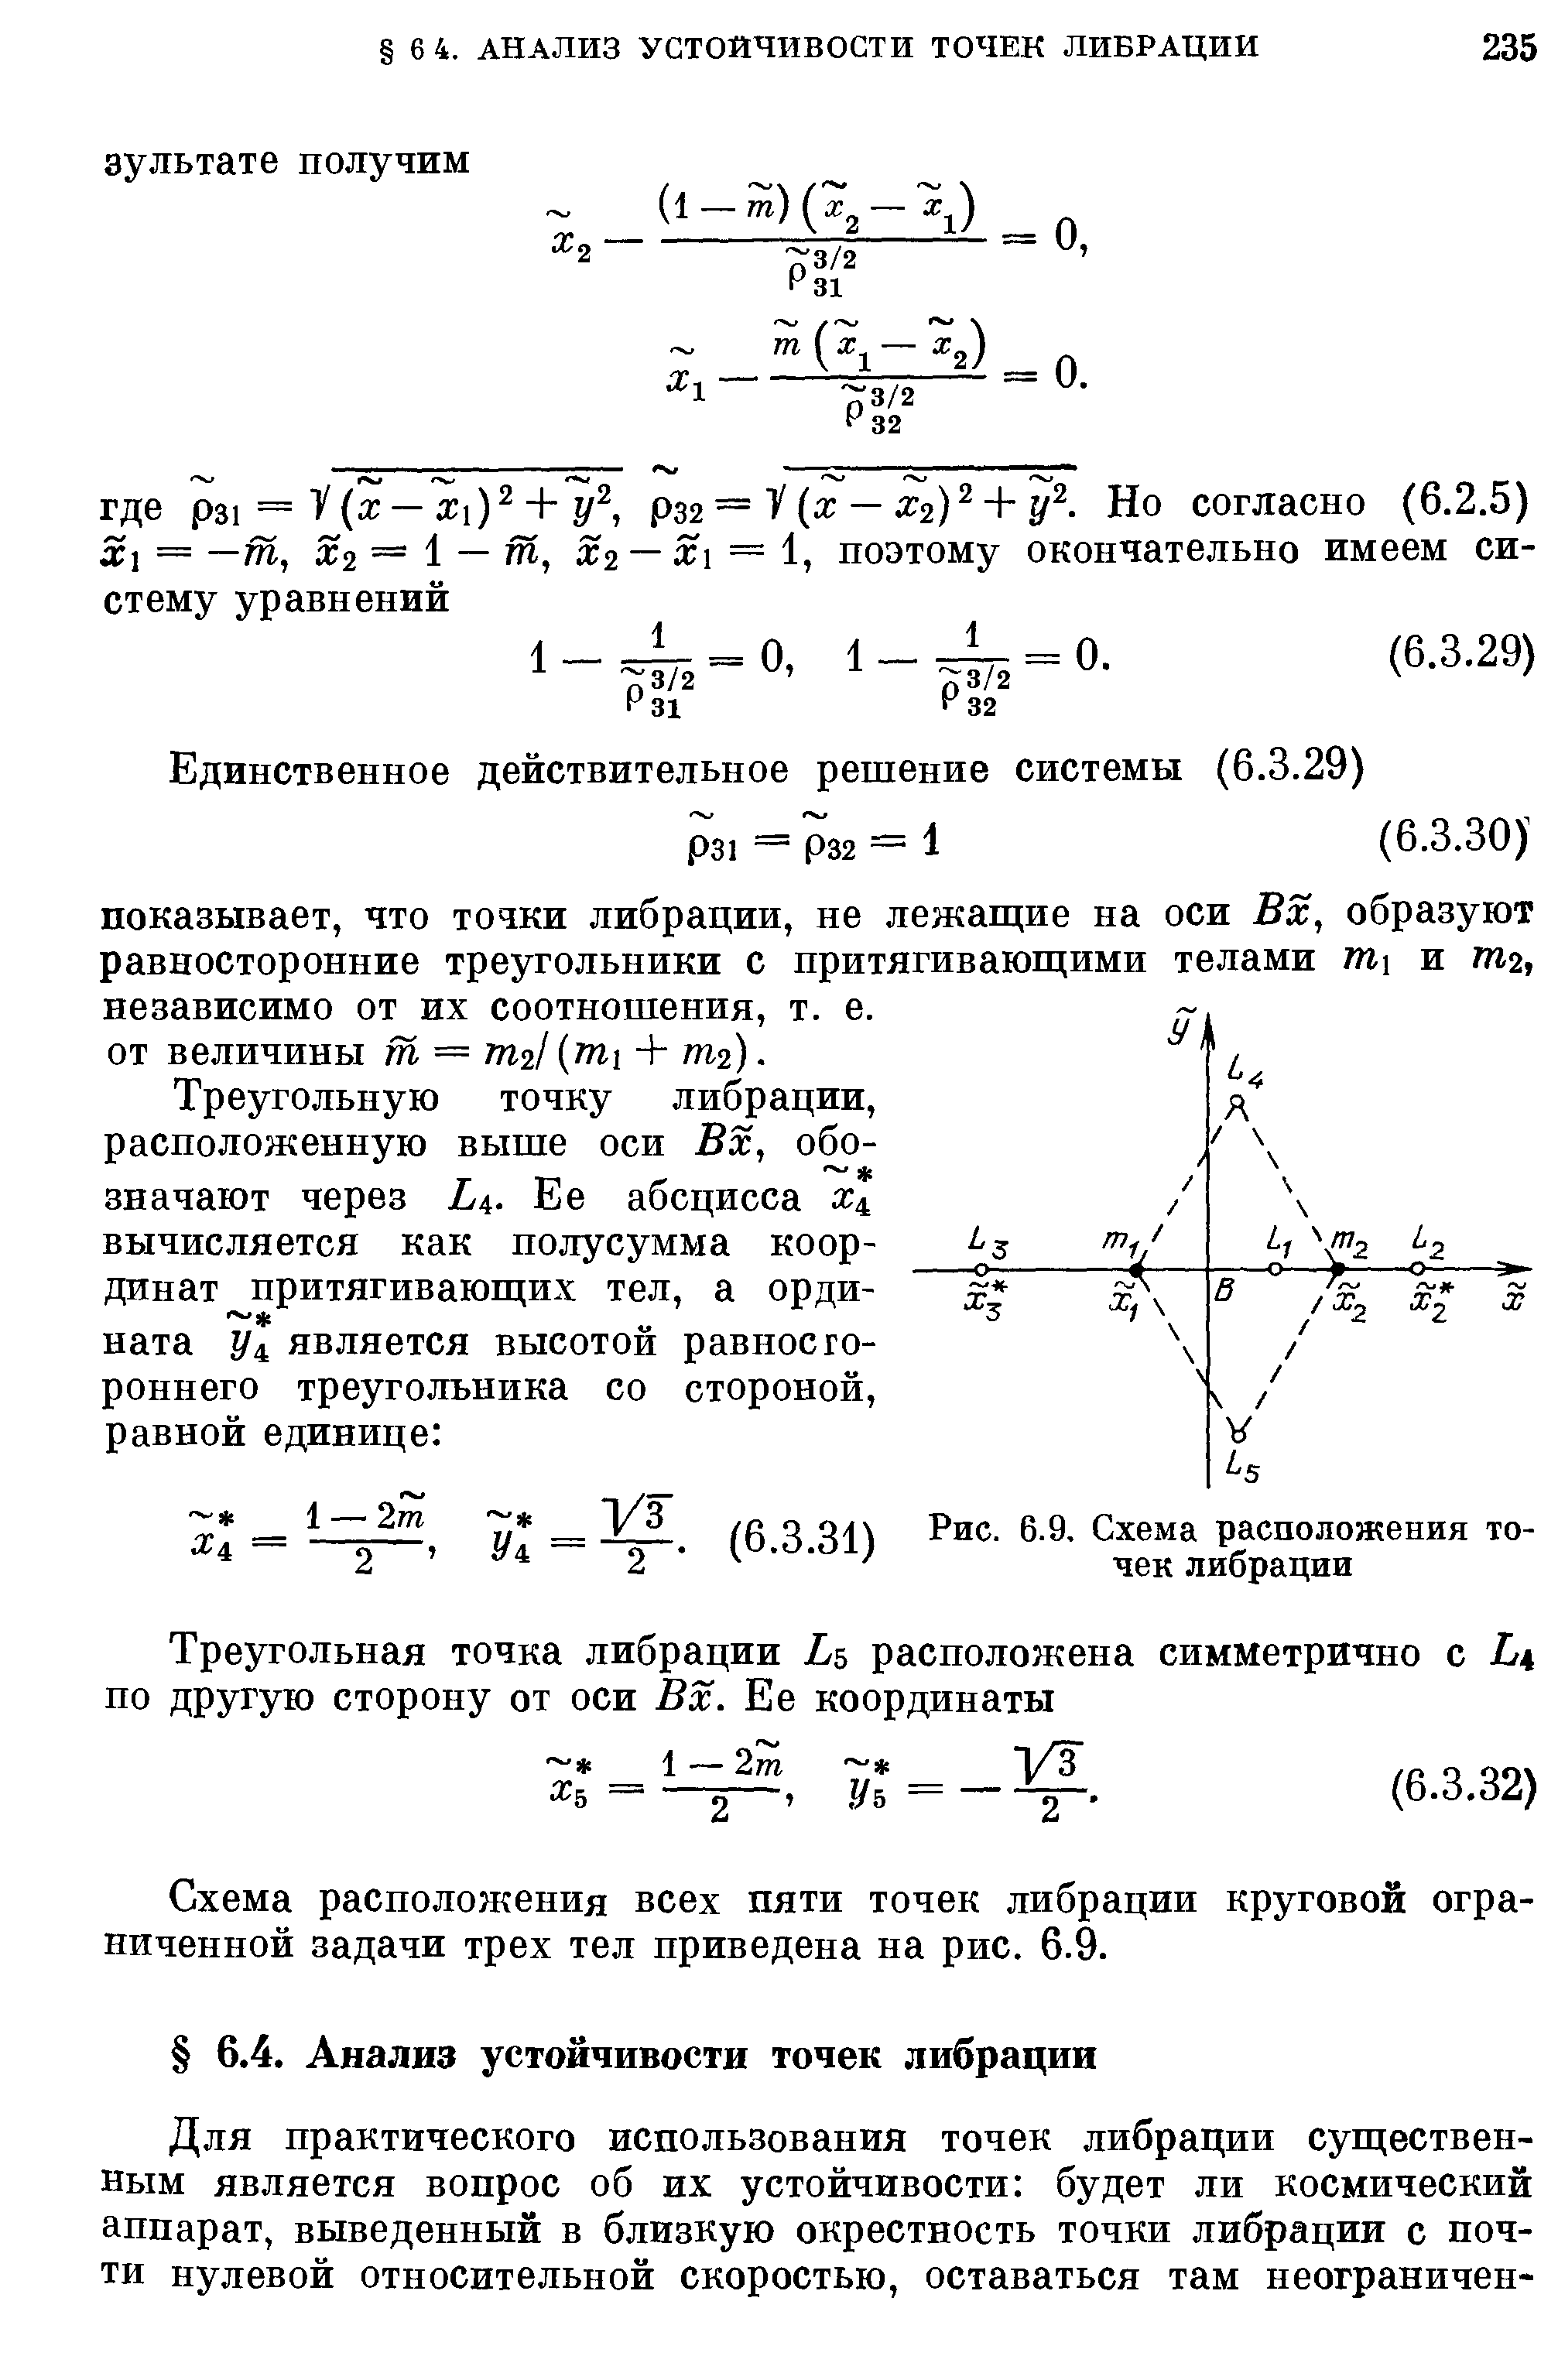 Схема расположения всех пяти точек либрации круговой ограниченной задачи трех тел приведена на рис. 6.9.
